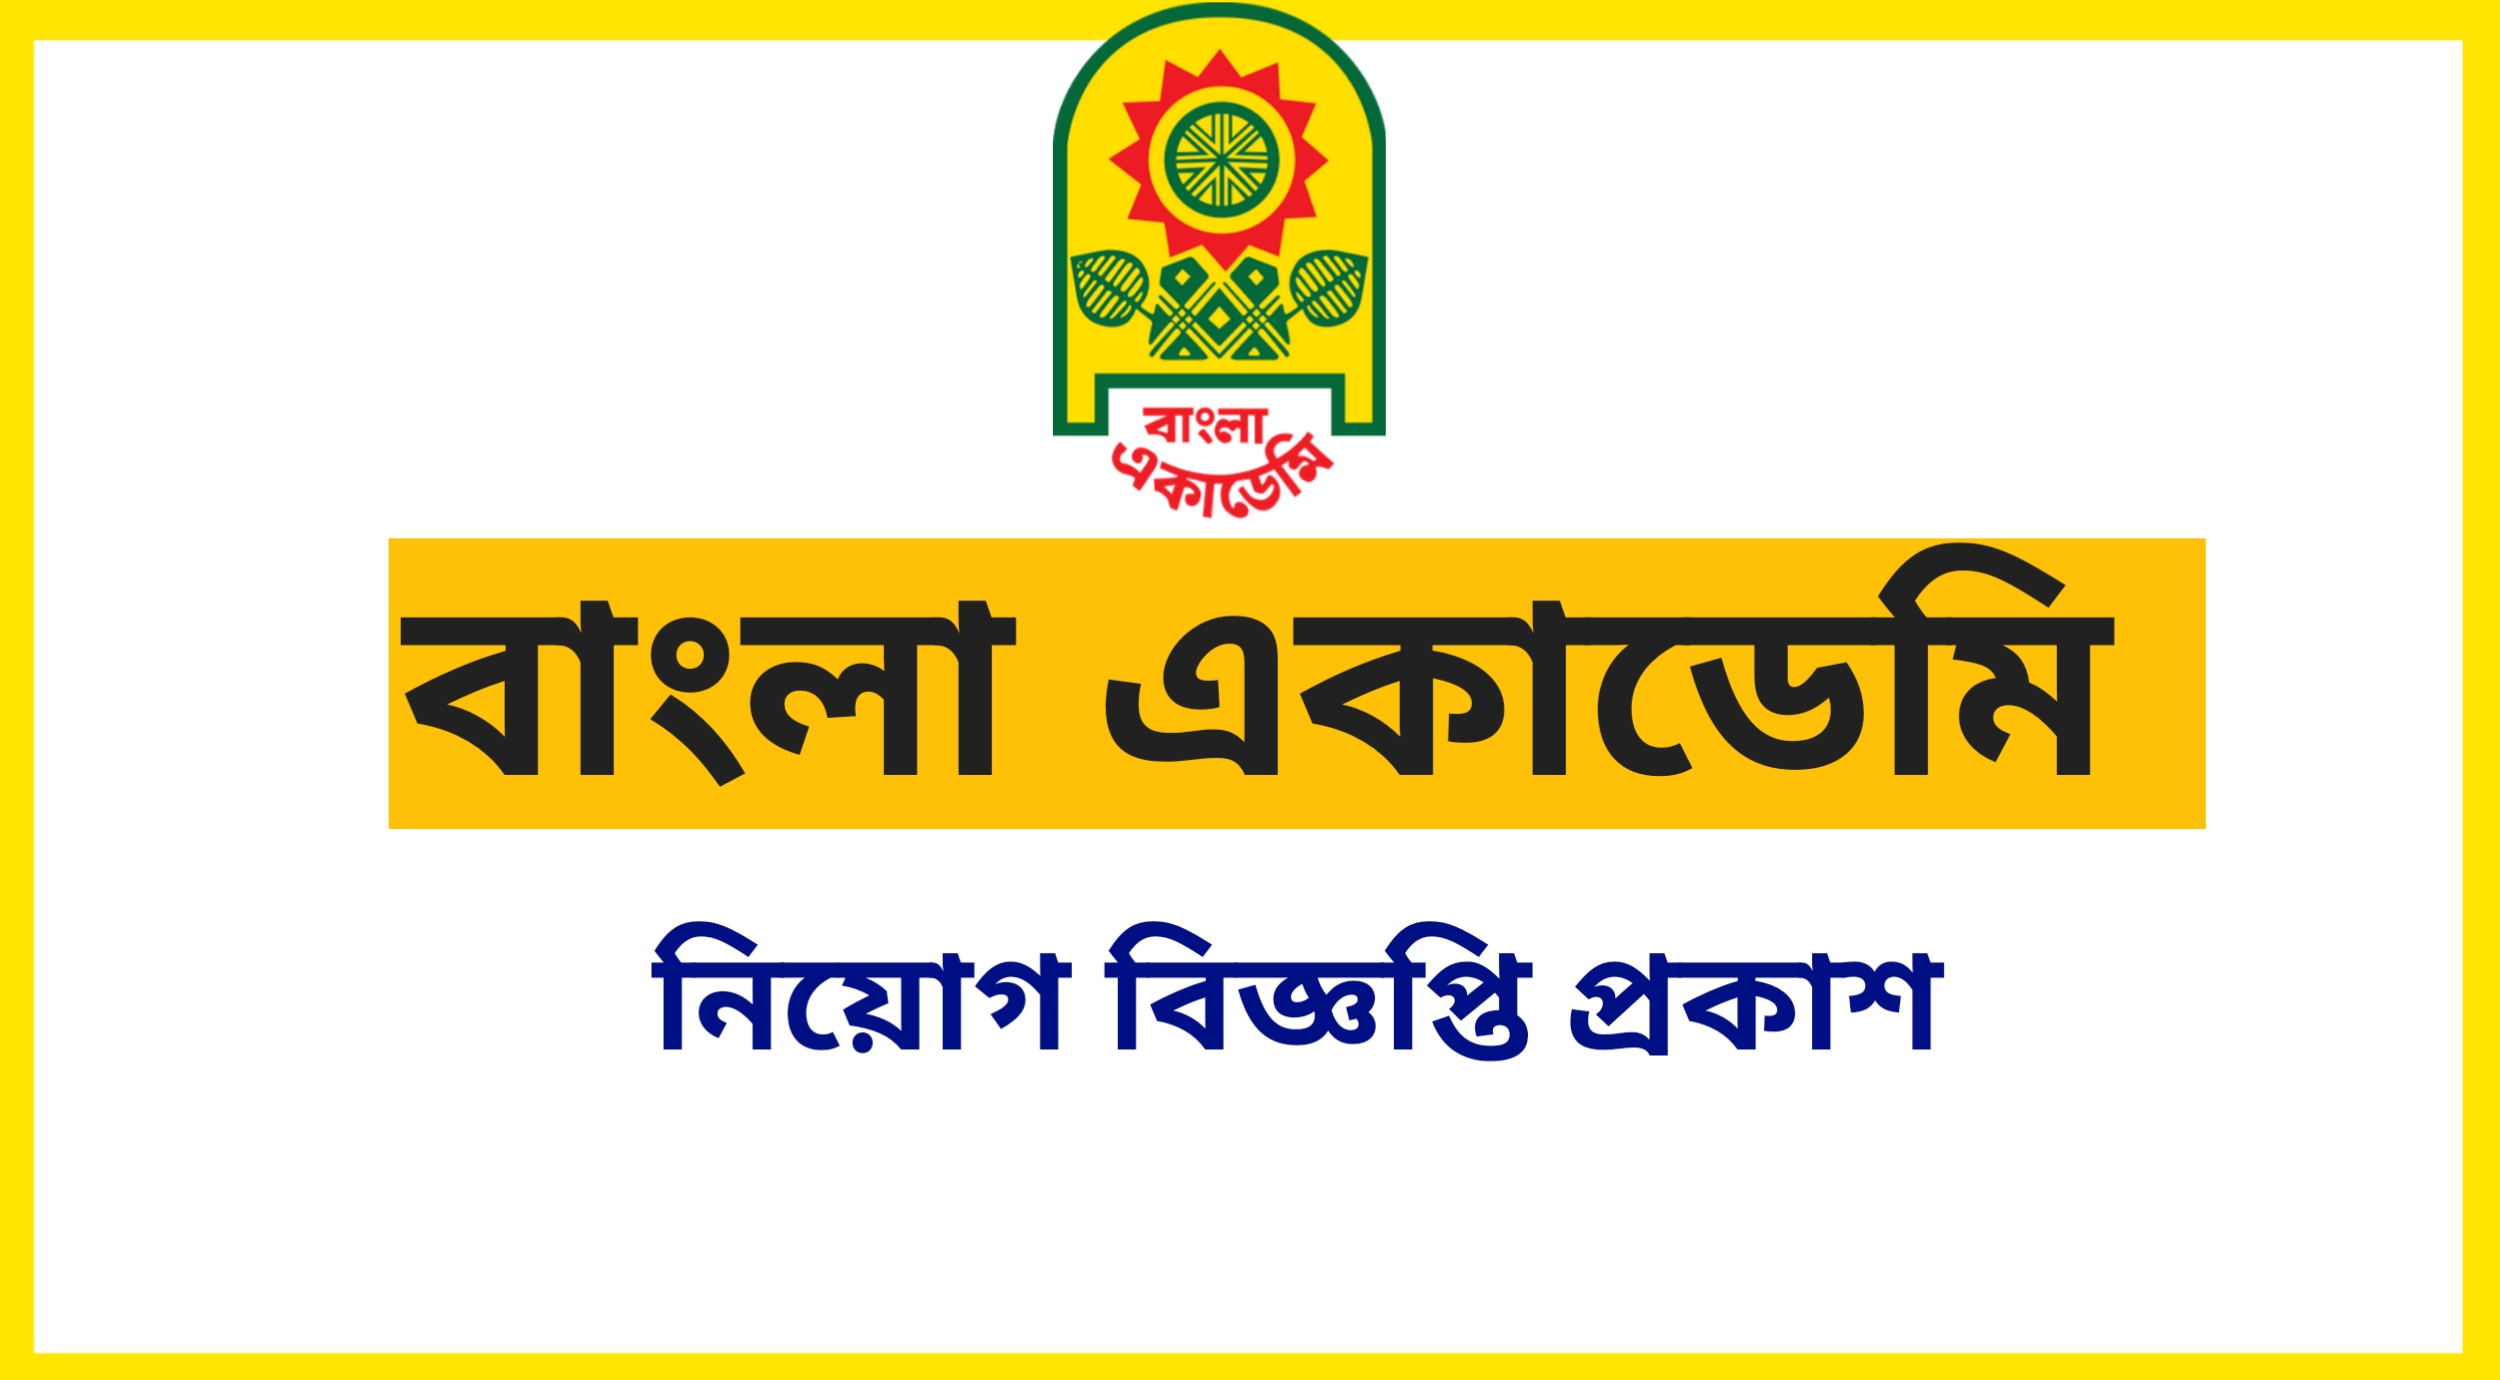 Banglaacademy.gov.bd Job Circular, bdjobspublisher.com